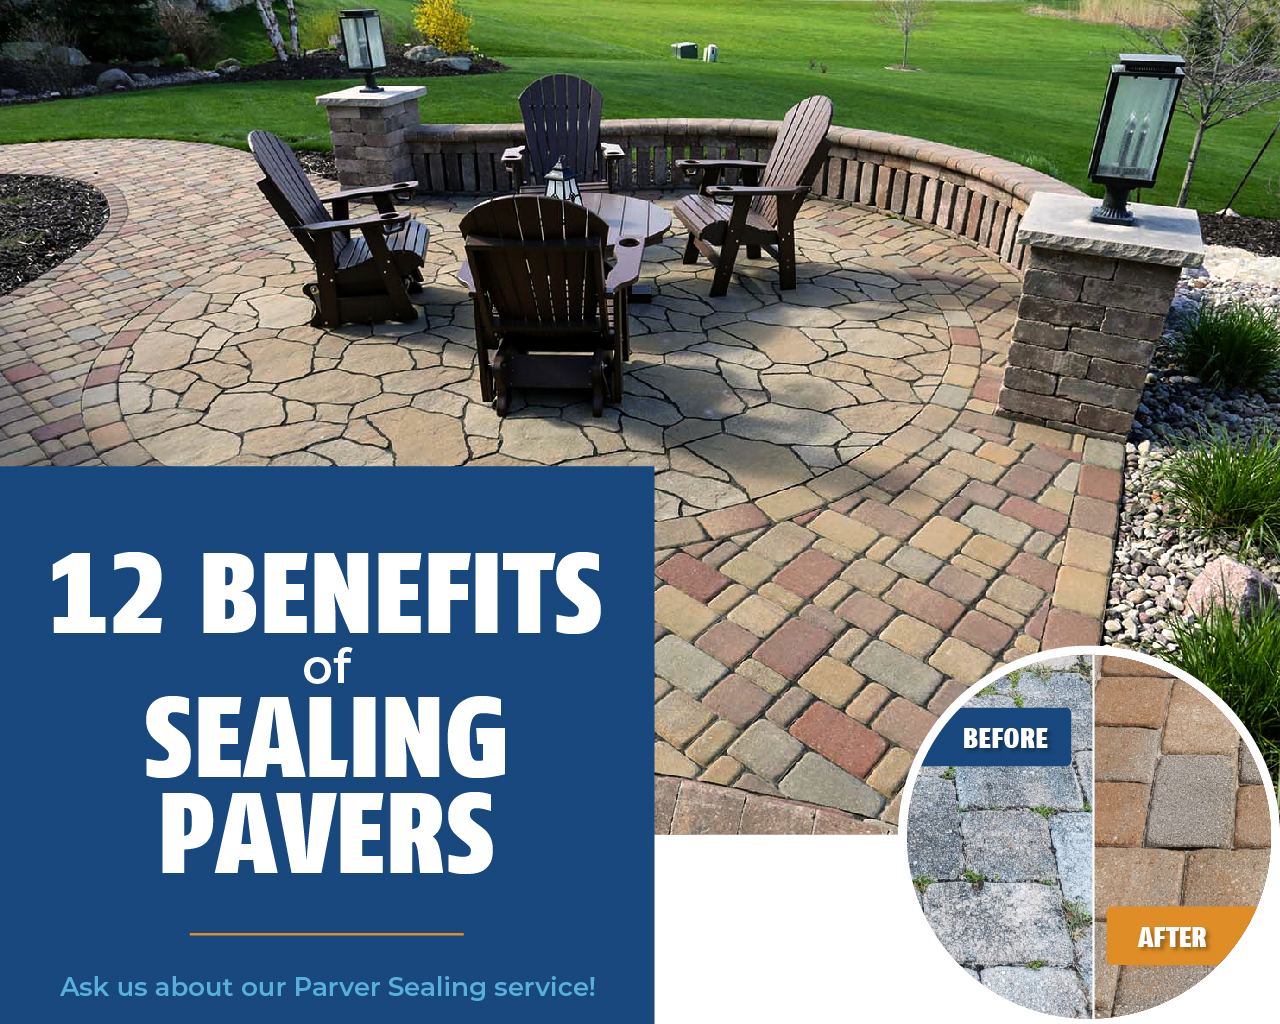 12 Benefits of Sealing Pavers